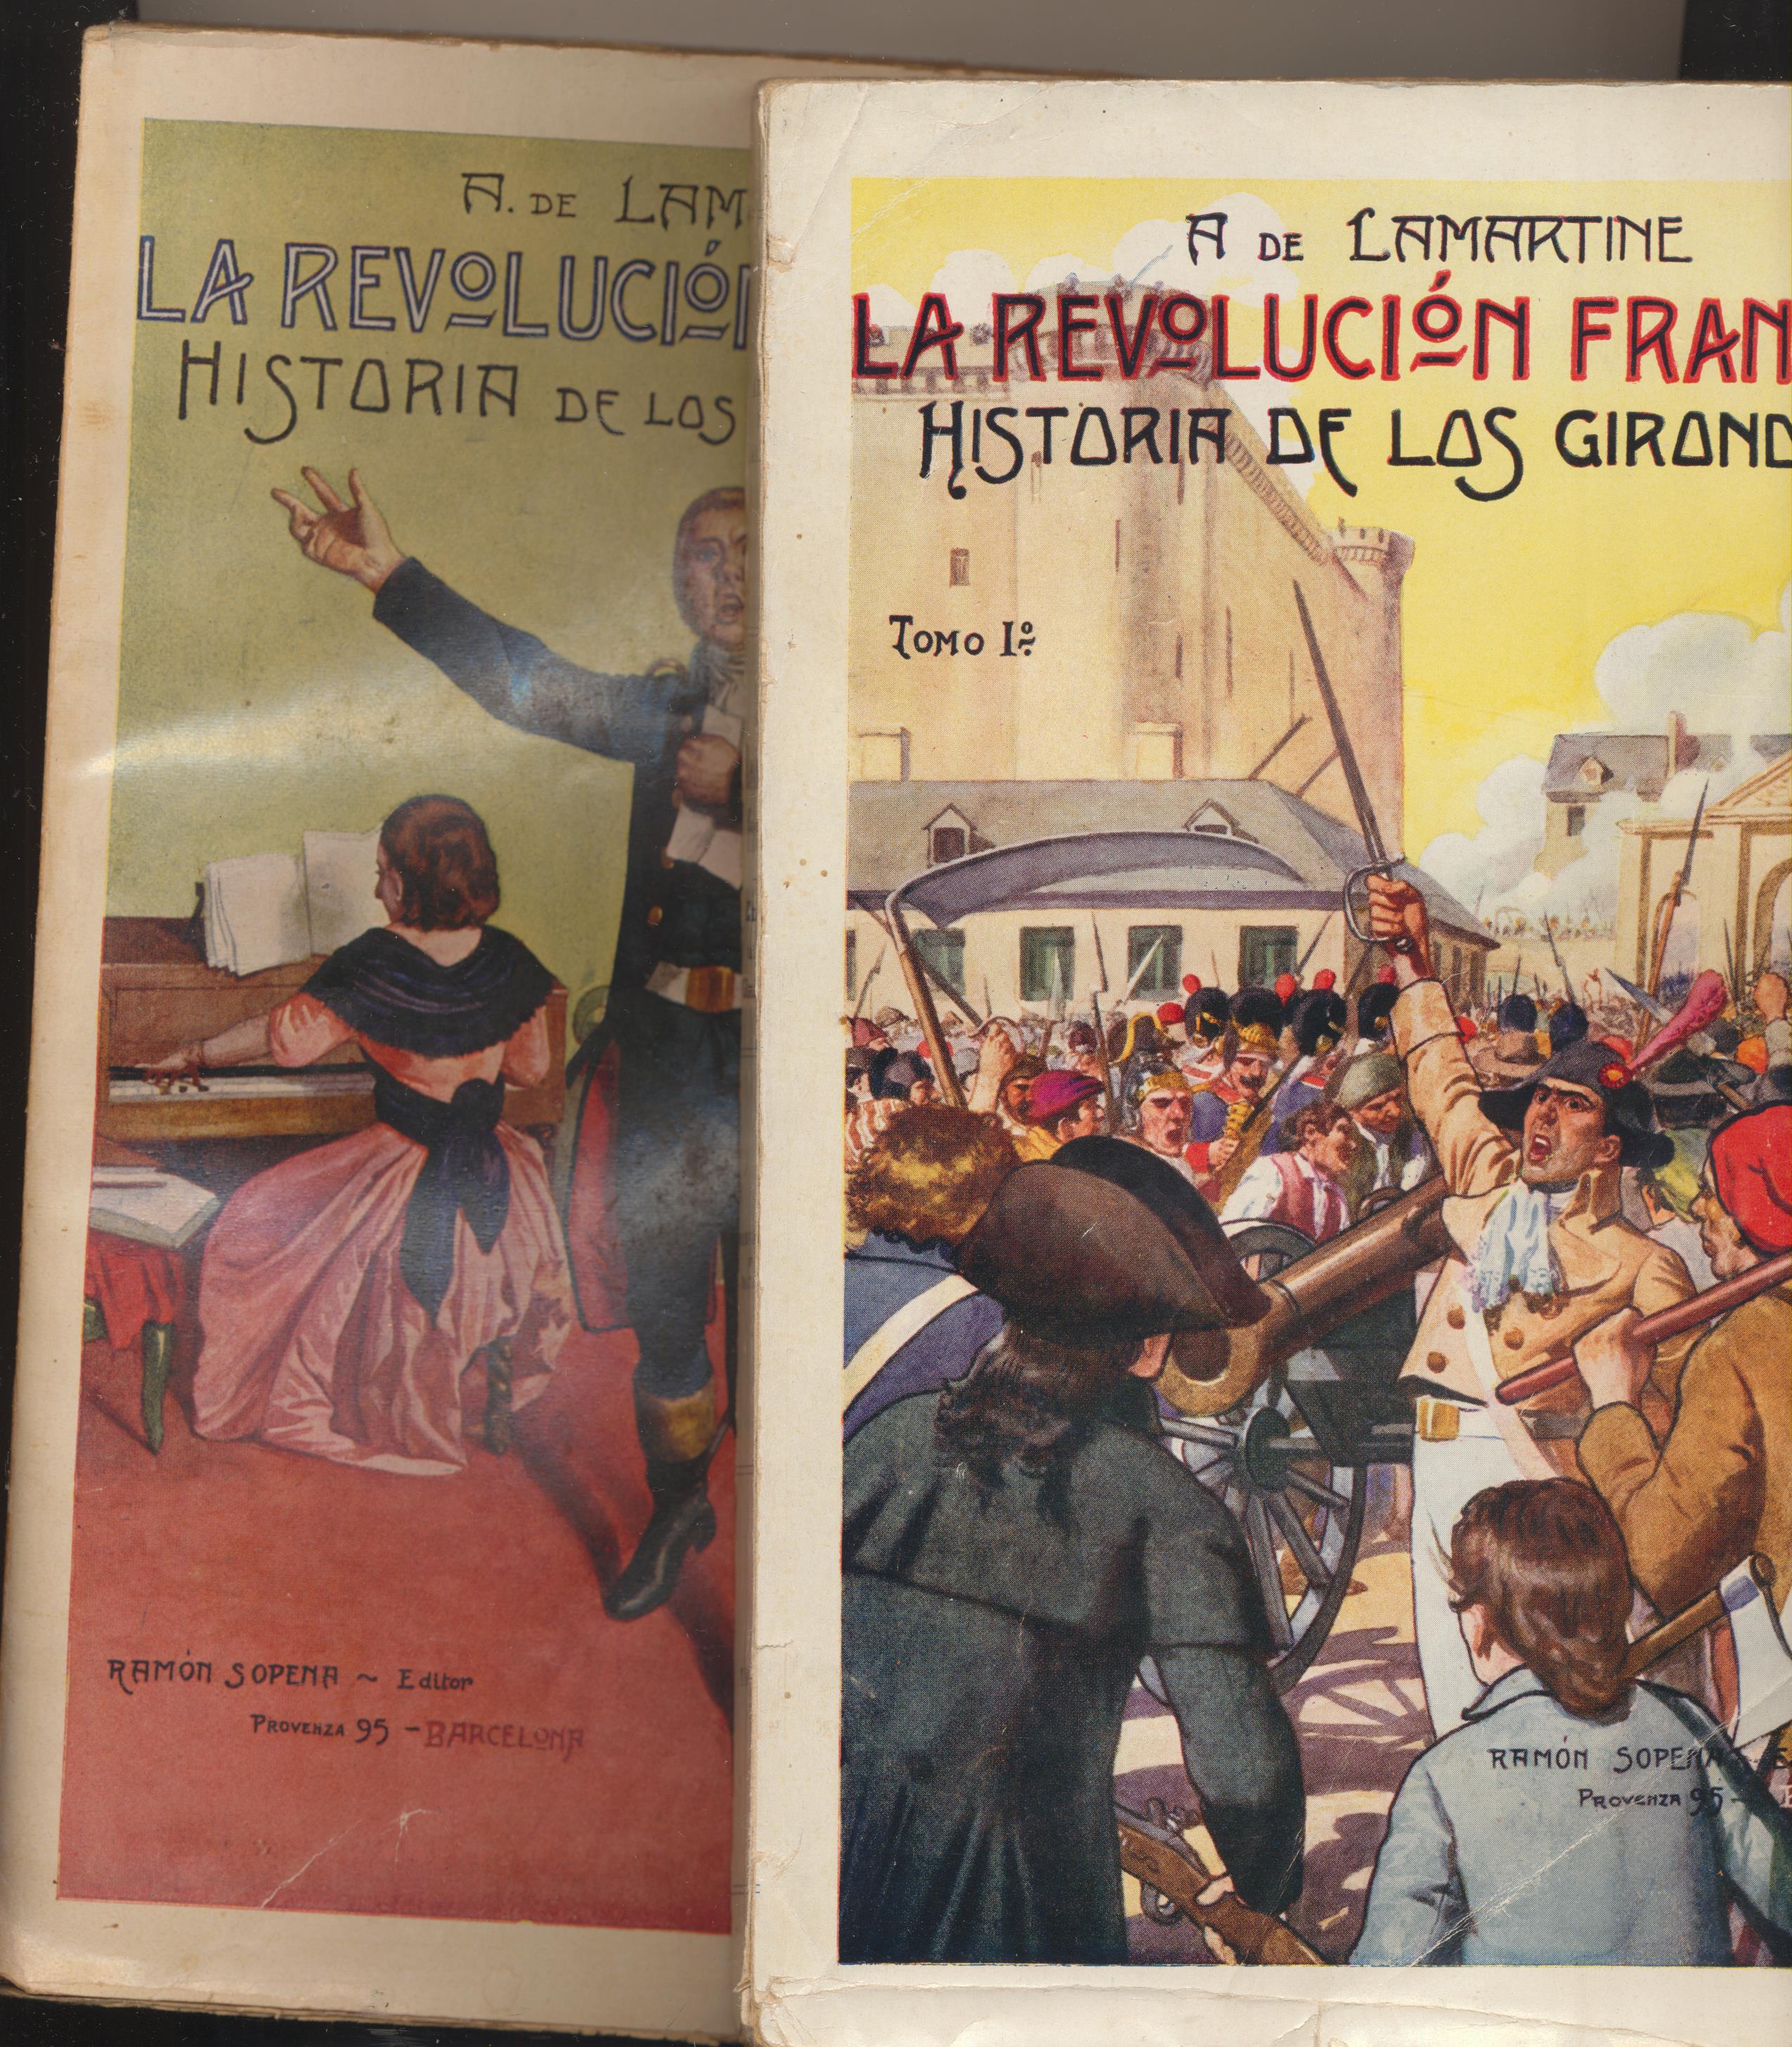 La Revolución Francesa. Historia de los Girondinos. Tomo I y II. por A. de Lamartine. Editorial Sopena 192?